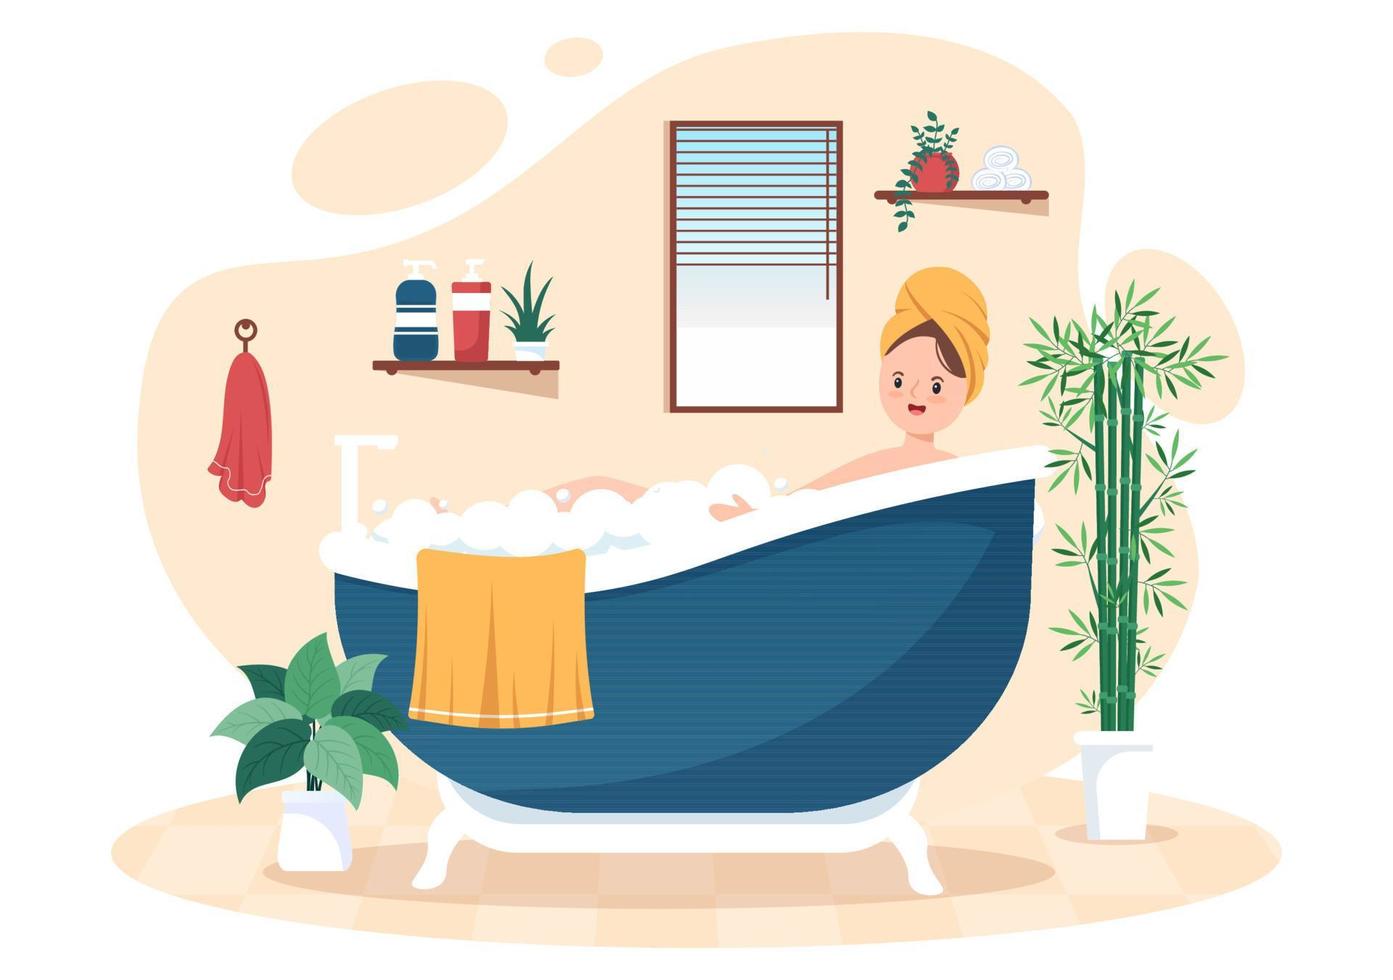 moderna badrumsmöbler inredningsbakgrundsillustration med flicka som tar ett bad i badkaret i platt färgstil vektor